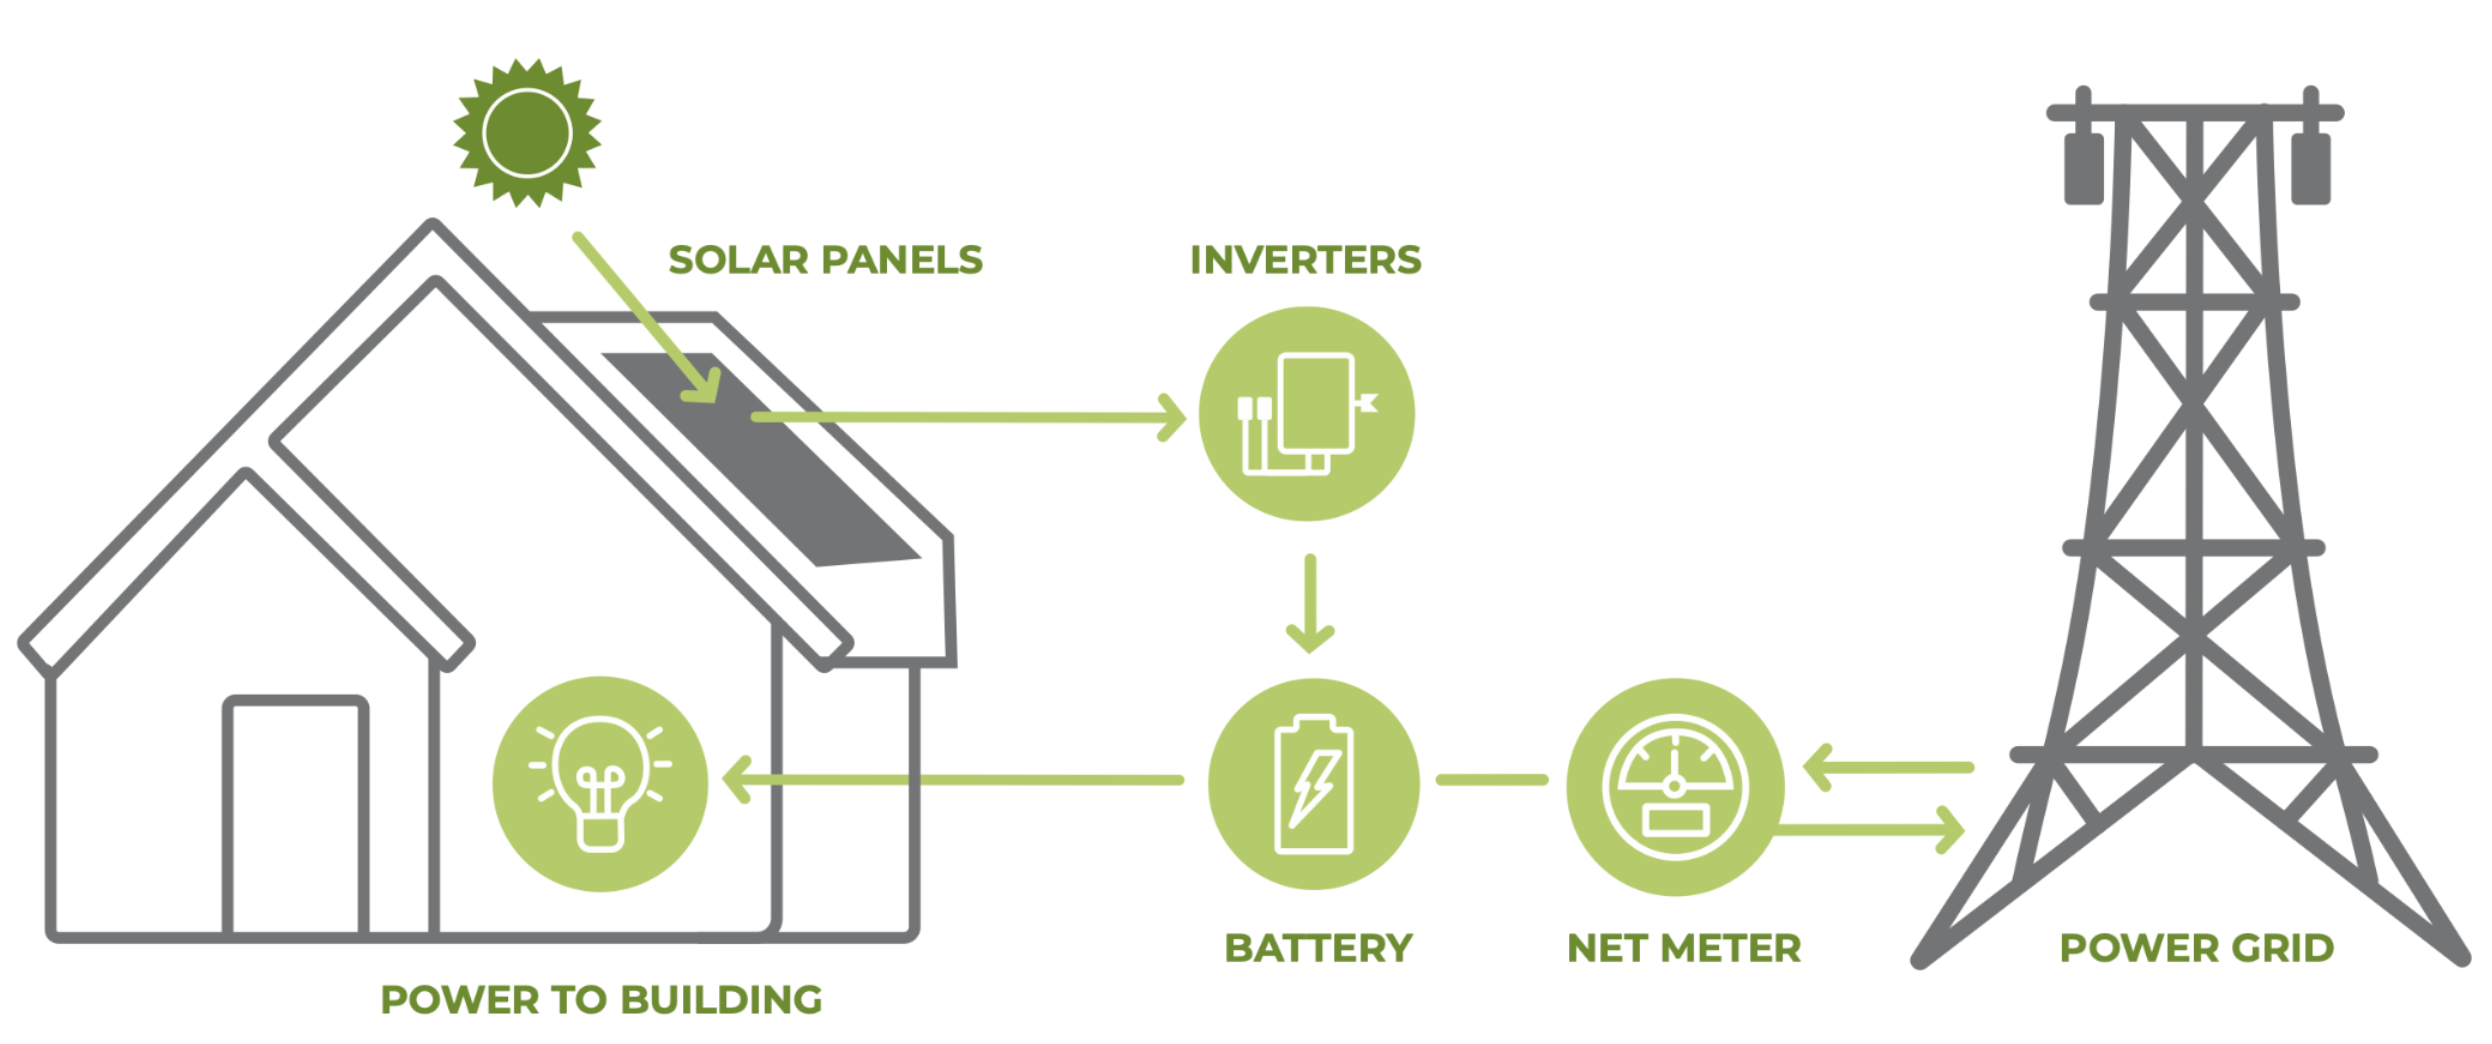 Net Metering with Battery - Ipsun Solar